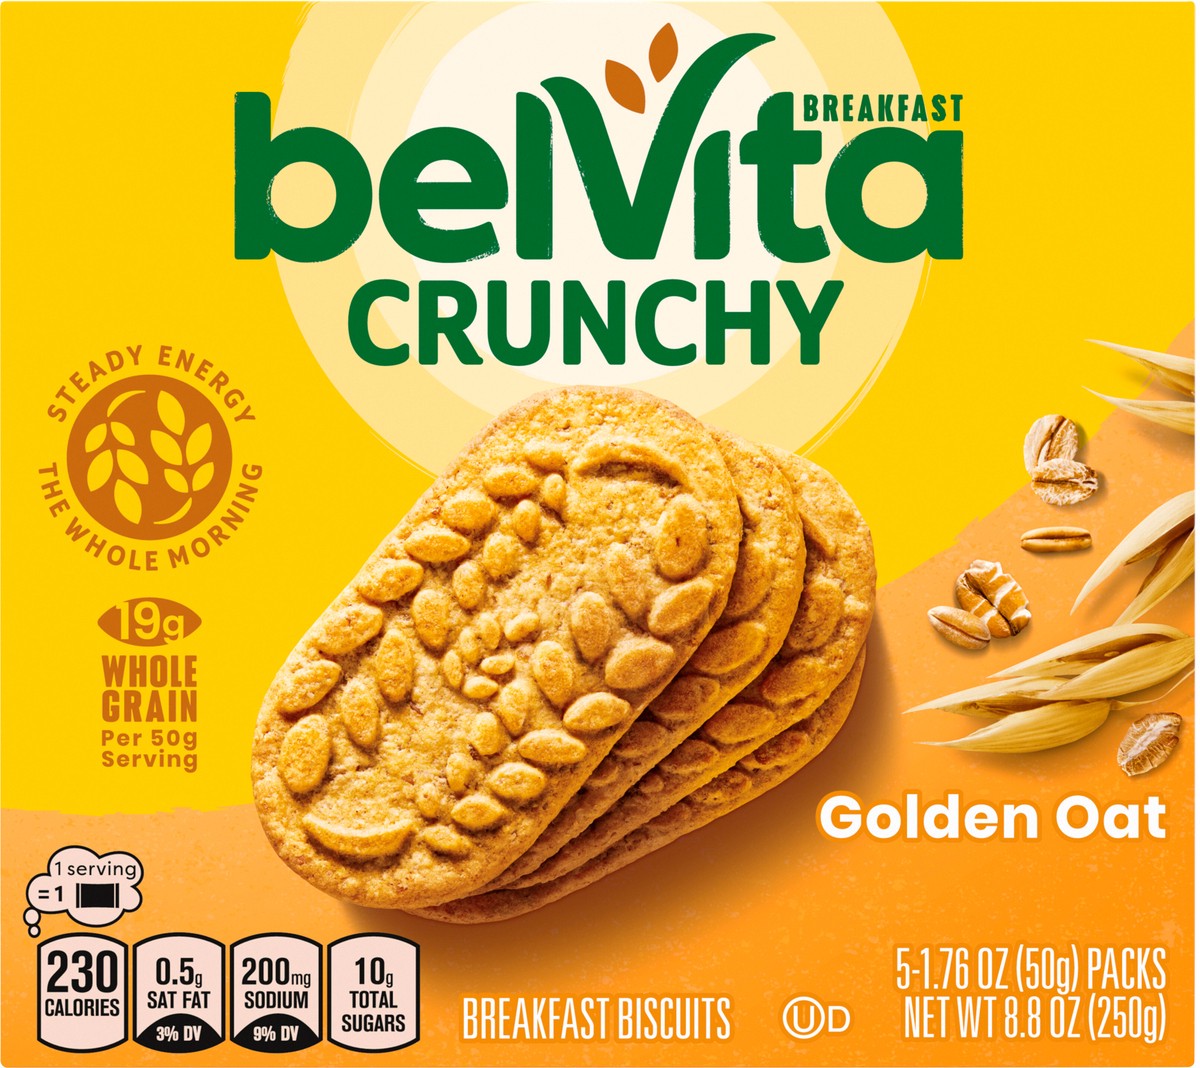 slide 6 of 9, belVita Golden Oat Breakfast Biscuits, 5 Packs (4 Biscuits Per Pack), 8.8 oz